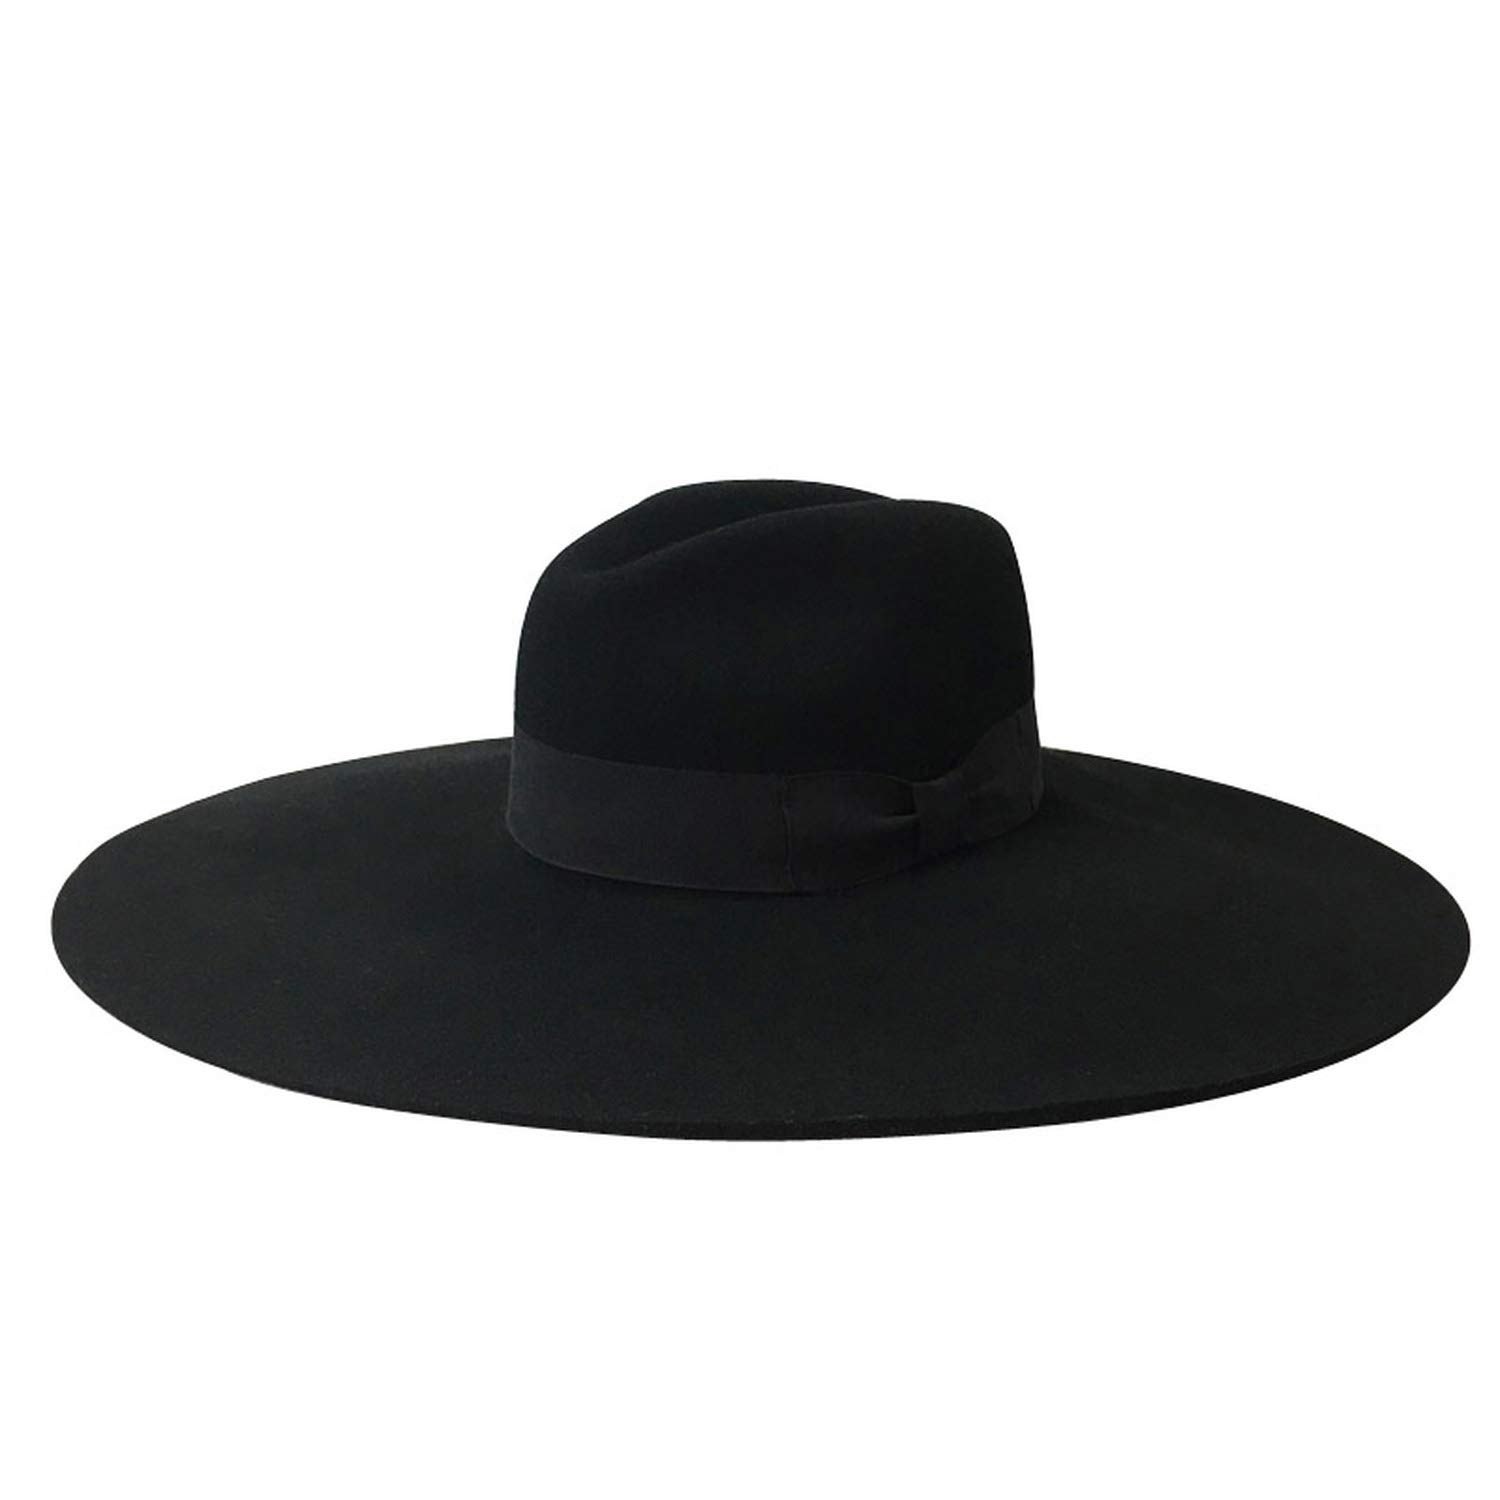 Купить шляпу мужскую с полями. Шляпа Федора мужская широкополая. Fedora шляпа мужская широкополая. Шляпа мужская Fedora Black. Фетровая шляпа Федора.